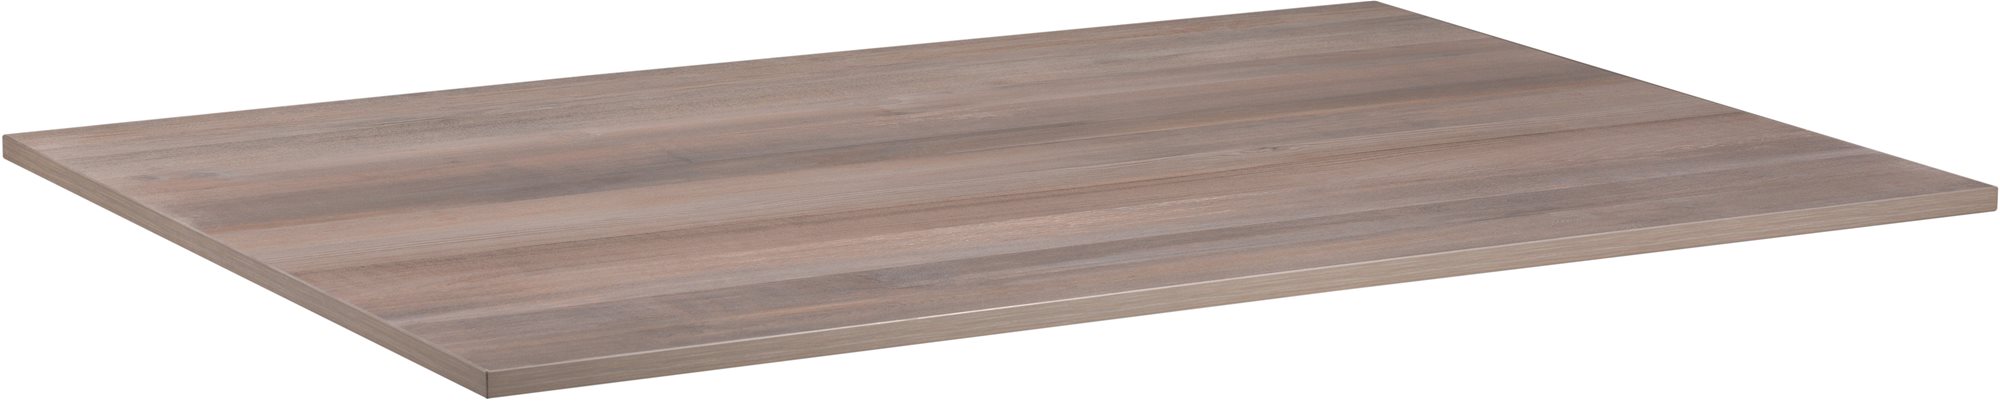 Asztallap AlzaErgo TTE-12 120x80 cm laminált szürke tölgyfa